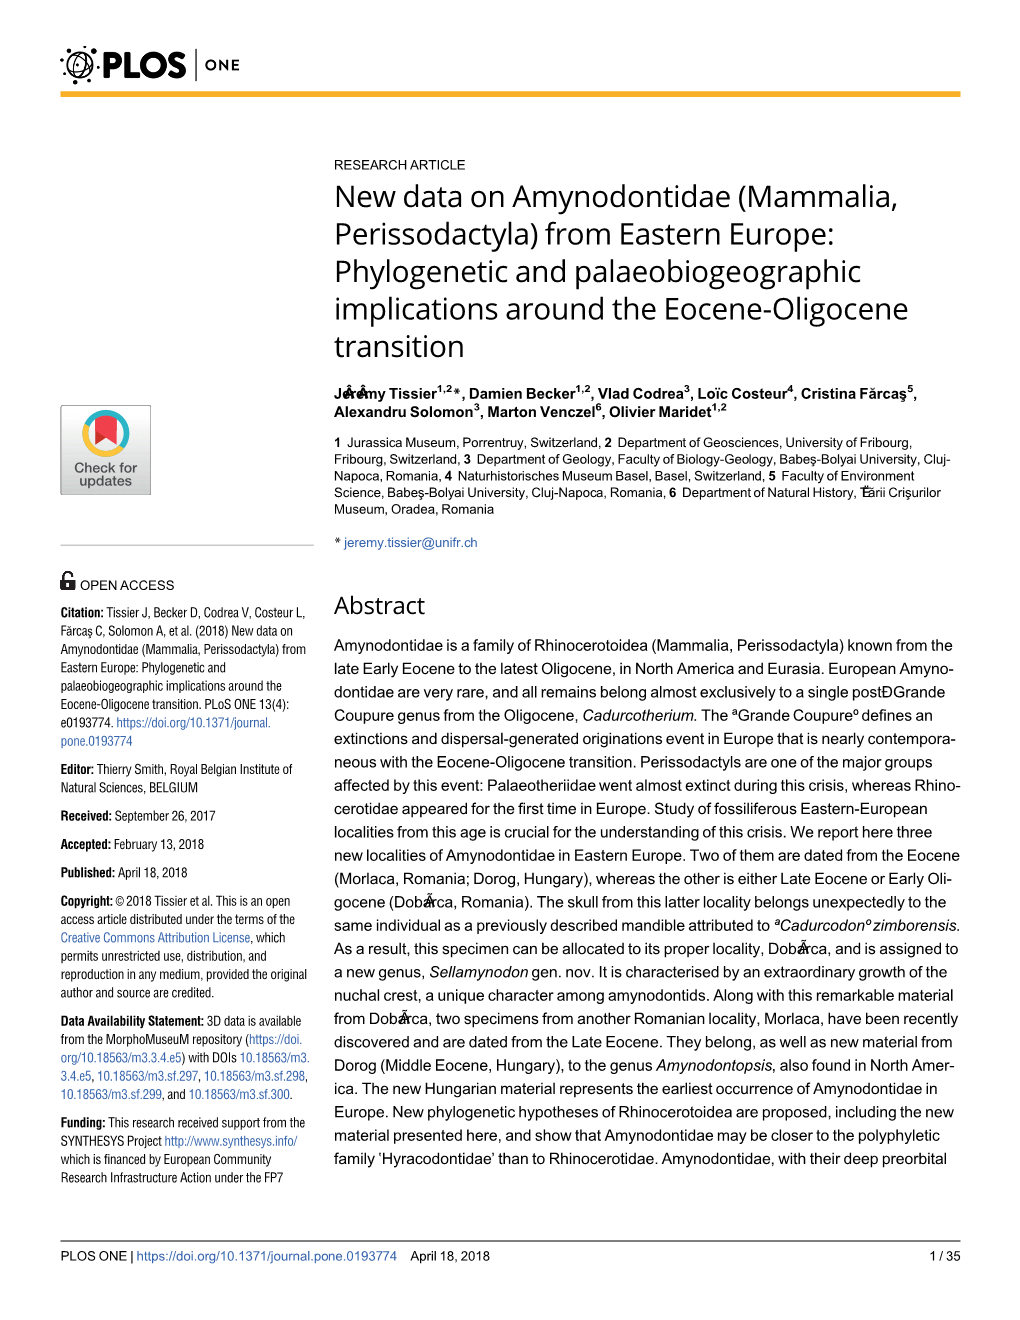 New Data on Amynodontidae (Mammalia, Perissodactyla) from Eastern Europe: Phylogenetic and Palaeobiogeographic Implications Around the Eocene-Oligocene Transition